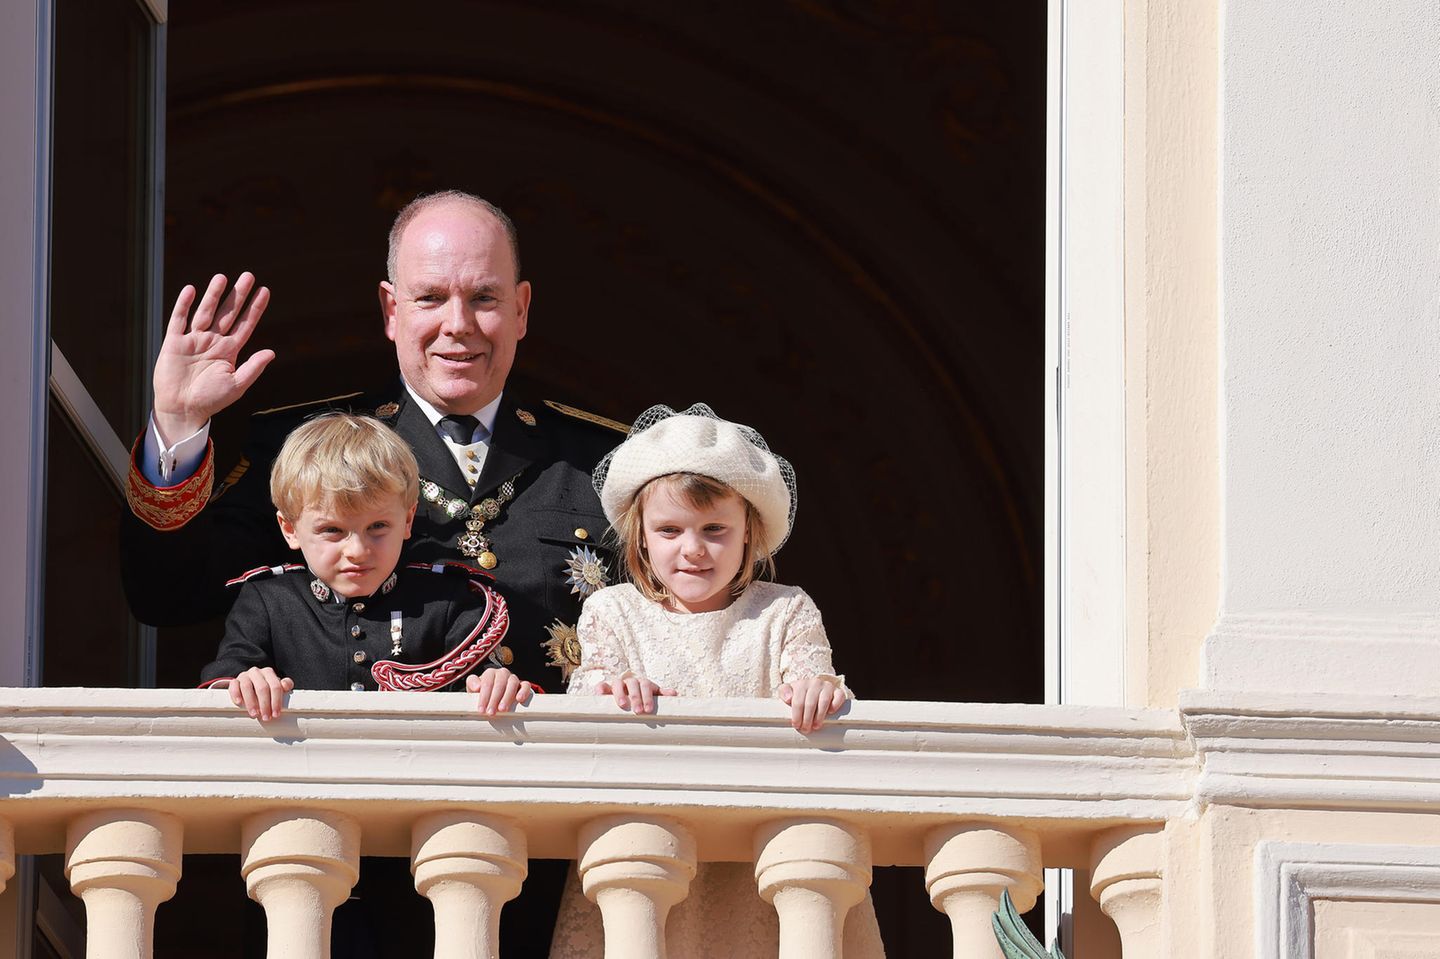 Es ist das erste Mal, dass Prinz Jacques und Prinzessin Gabriella den Nationalfeiertag in Monaco ohne ihre Mutter Fürstin Charlène erleben. Die Frau von Fürst Albert befindet sich derzeit in einer Klinik, wie der Monarch in einem Interview erklärte. Doch die Kinder haben eine besondere Geste vorbereitet ...